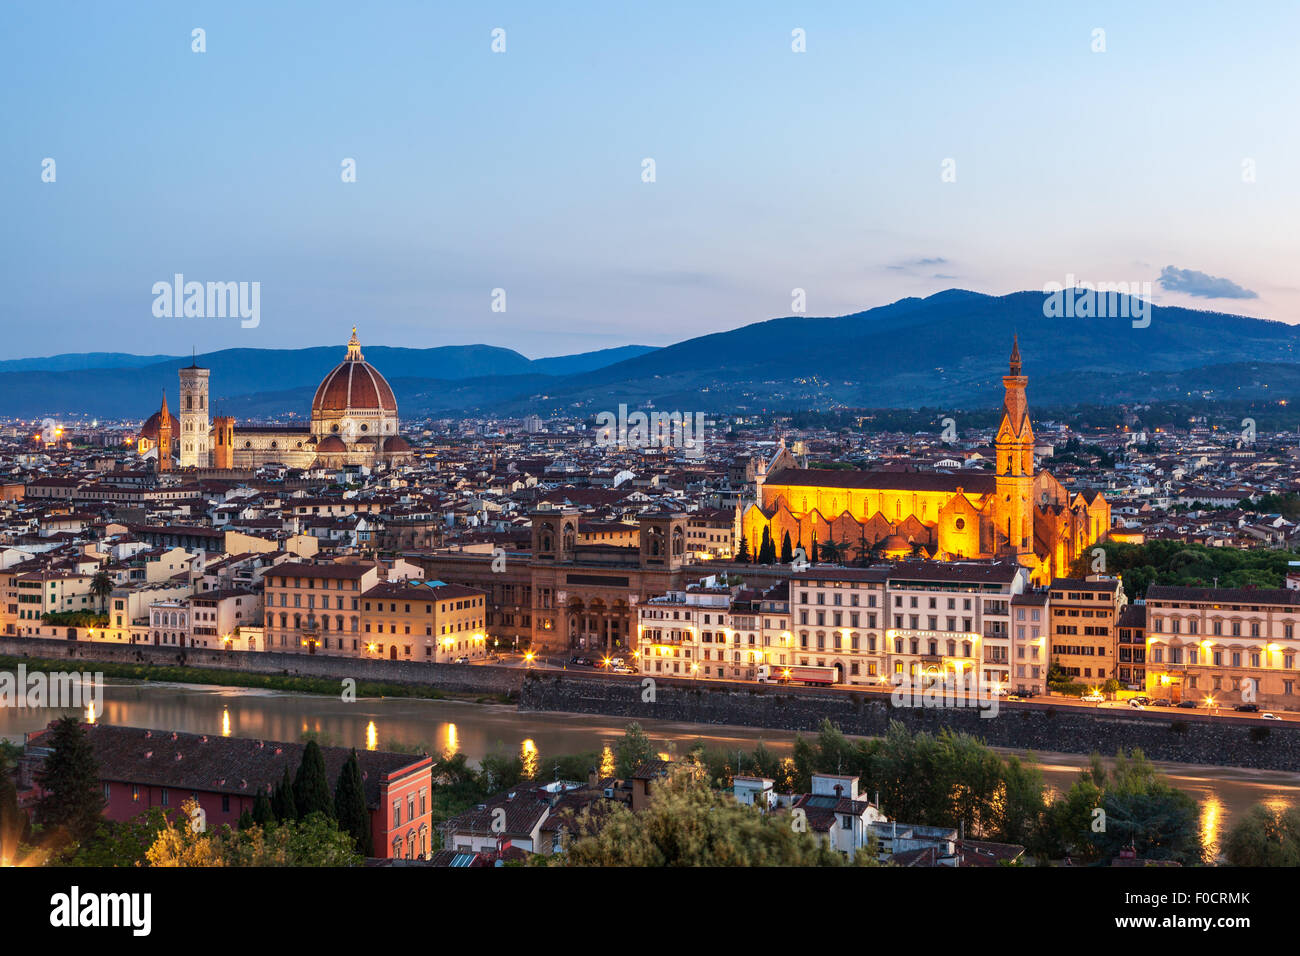 Skyline von Florenz die Hauptstadt der Toskana, Norditalien. Tolle Stadt-Zentrum der Renaissance-Kunst und Architektur. Stockfoto